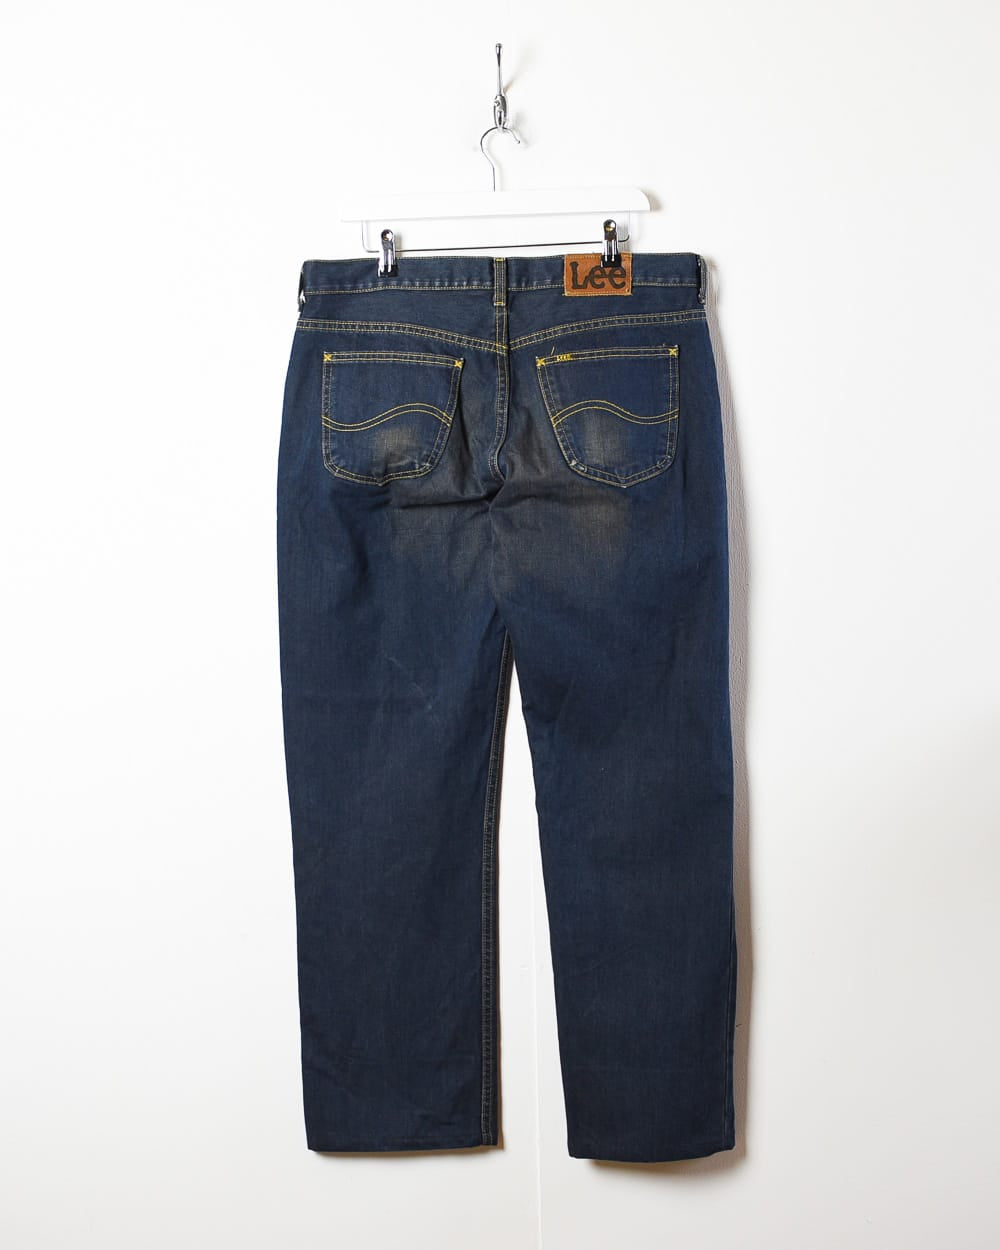 Navy Lee Jeans - W36 L32